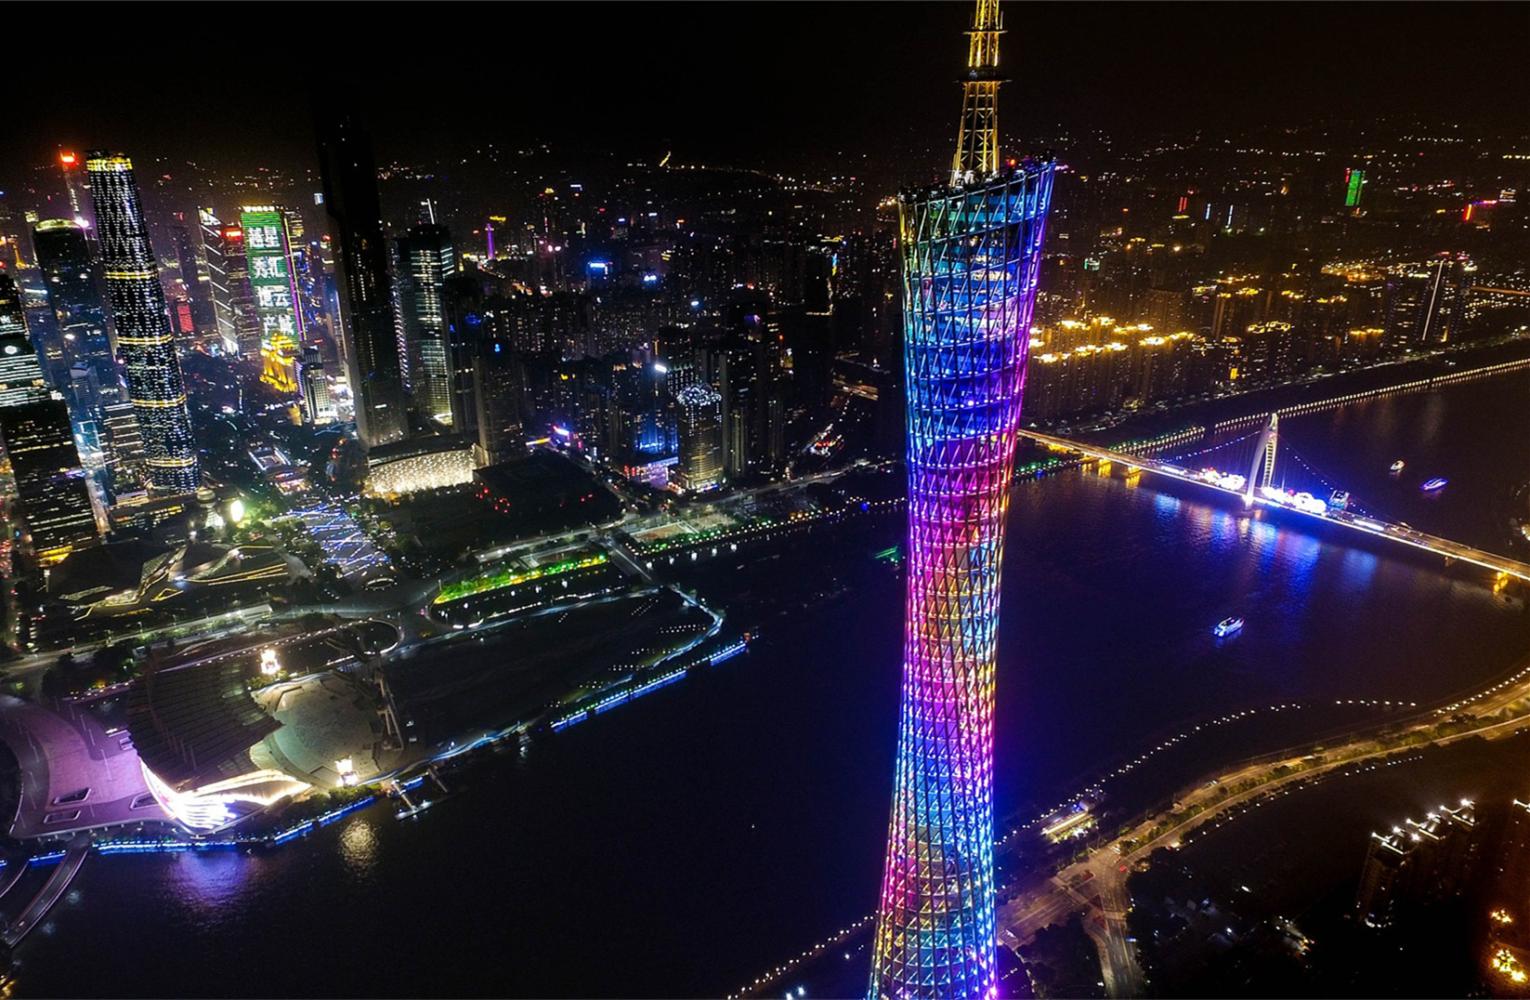 全世界发展最快的城市,有一半是中国的,这个城市还是第一!